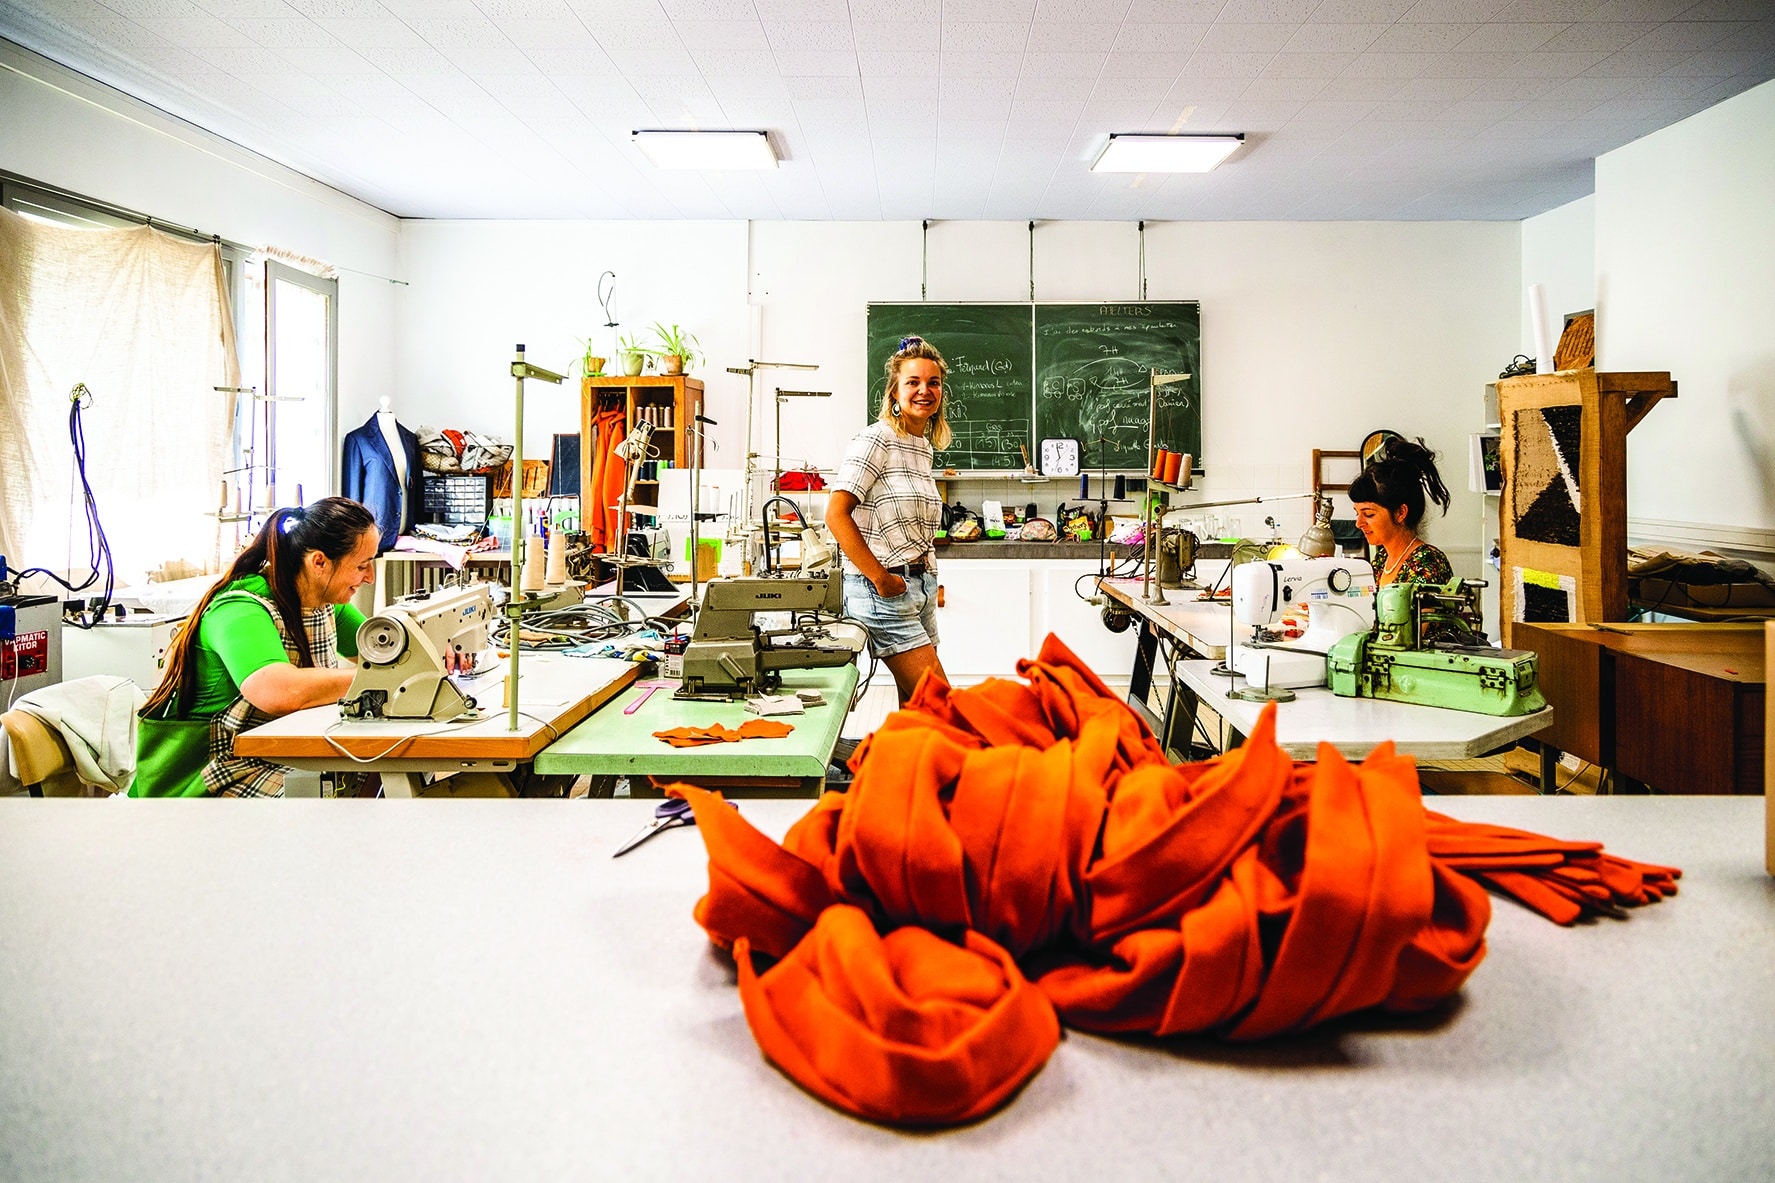 L'atelier de production textile, piloté par Sarah Langner.